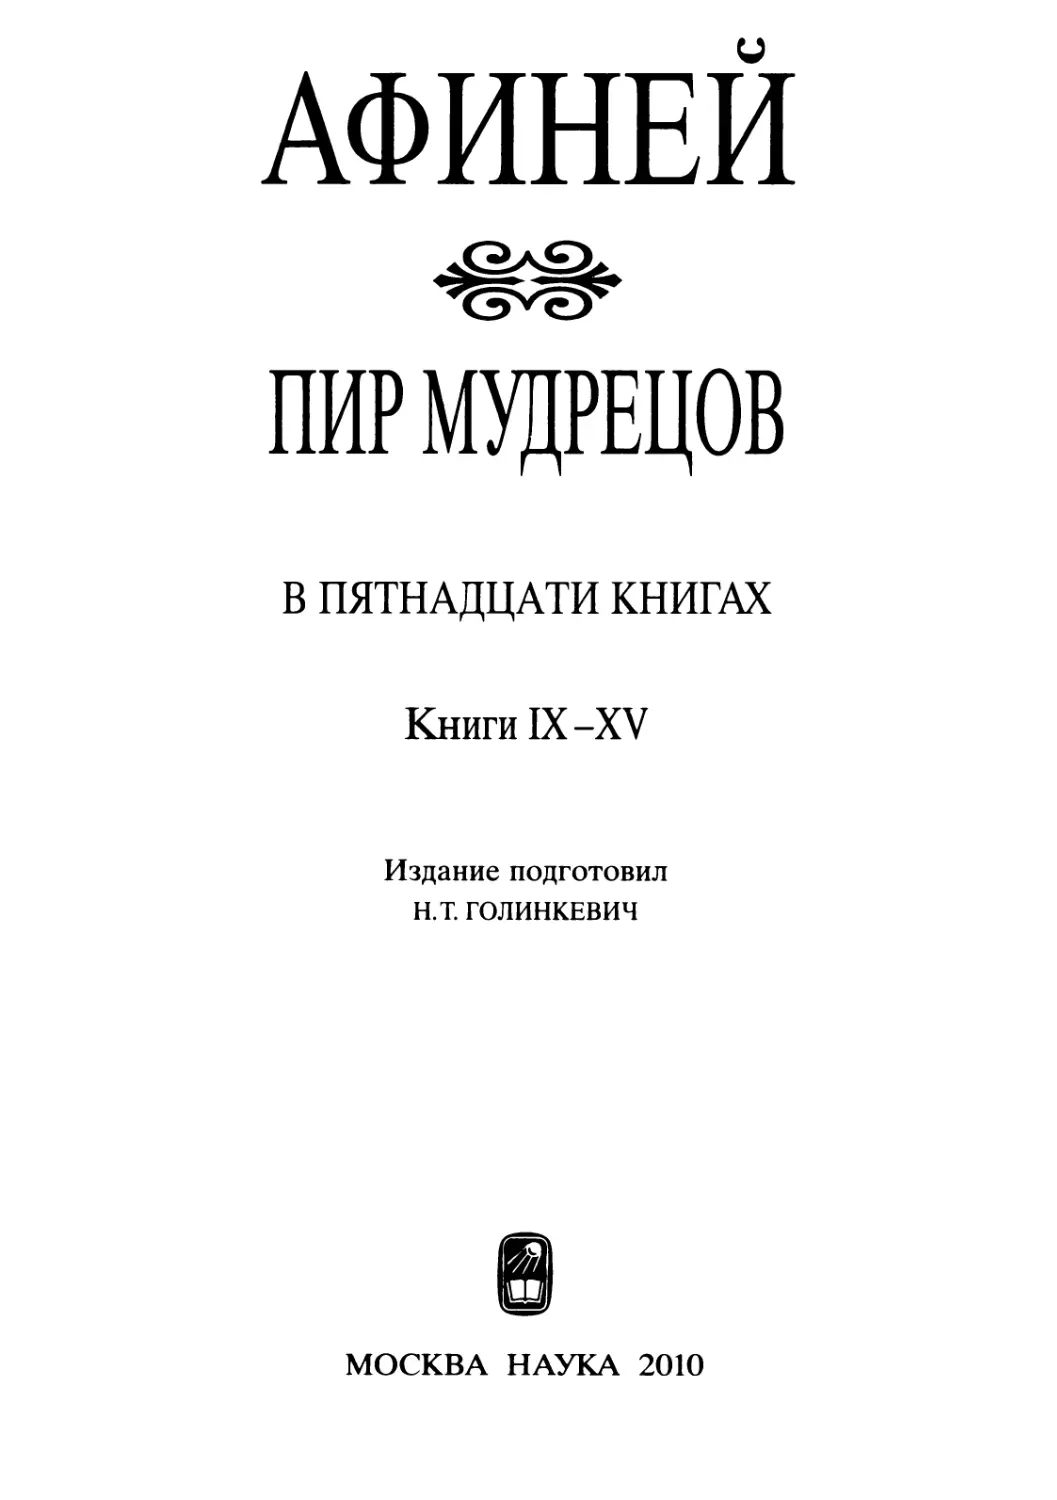 АФИНЕЙ. ПИР МУДРЕЦОВ. Книги IX-XV